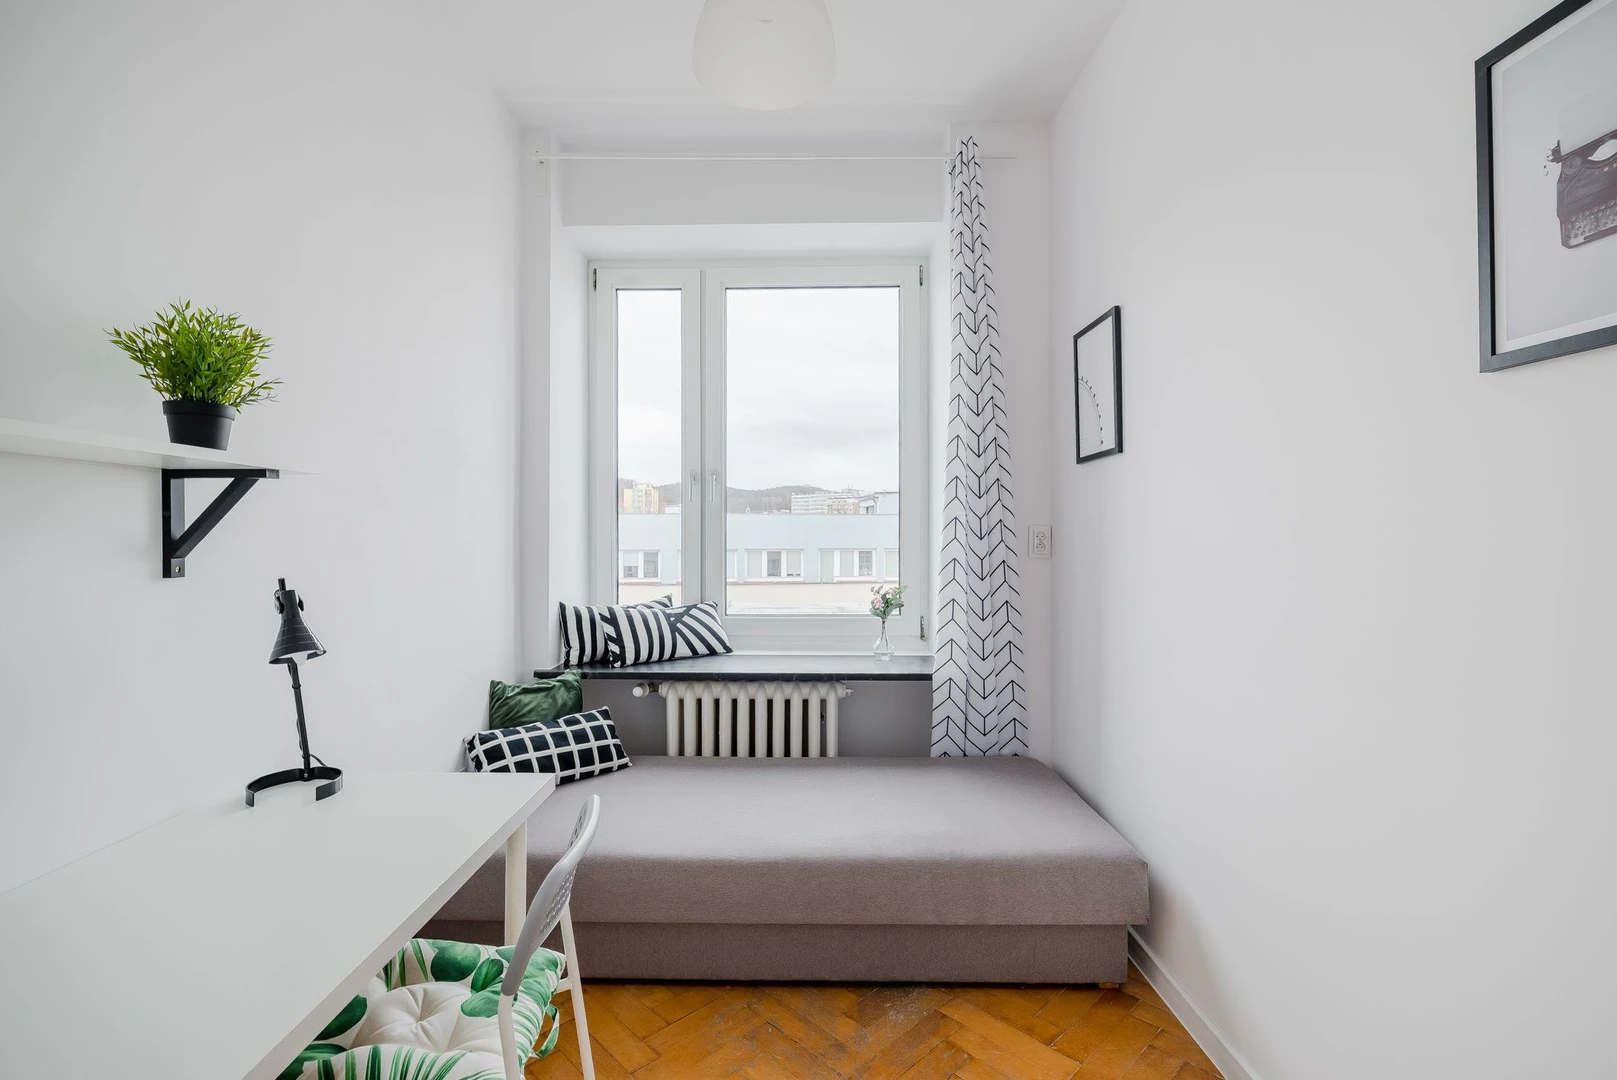 Alquiler de habitación en piso compartido en Gdynia